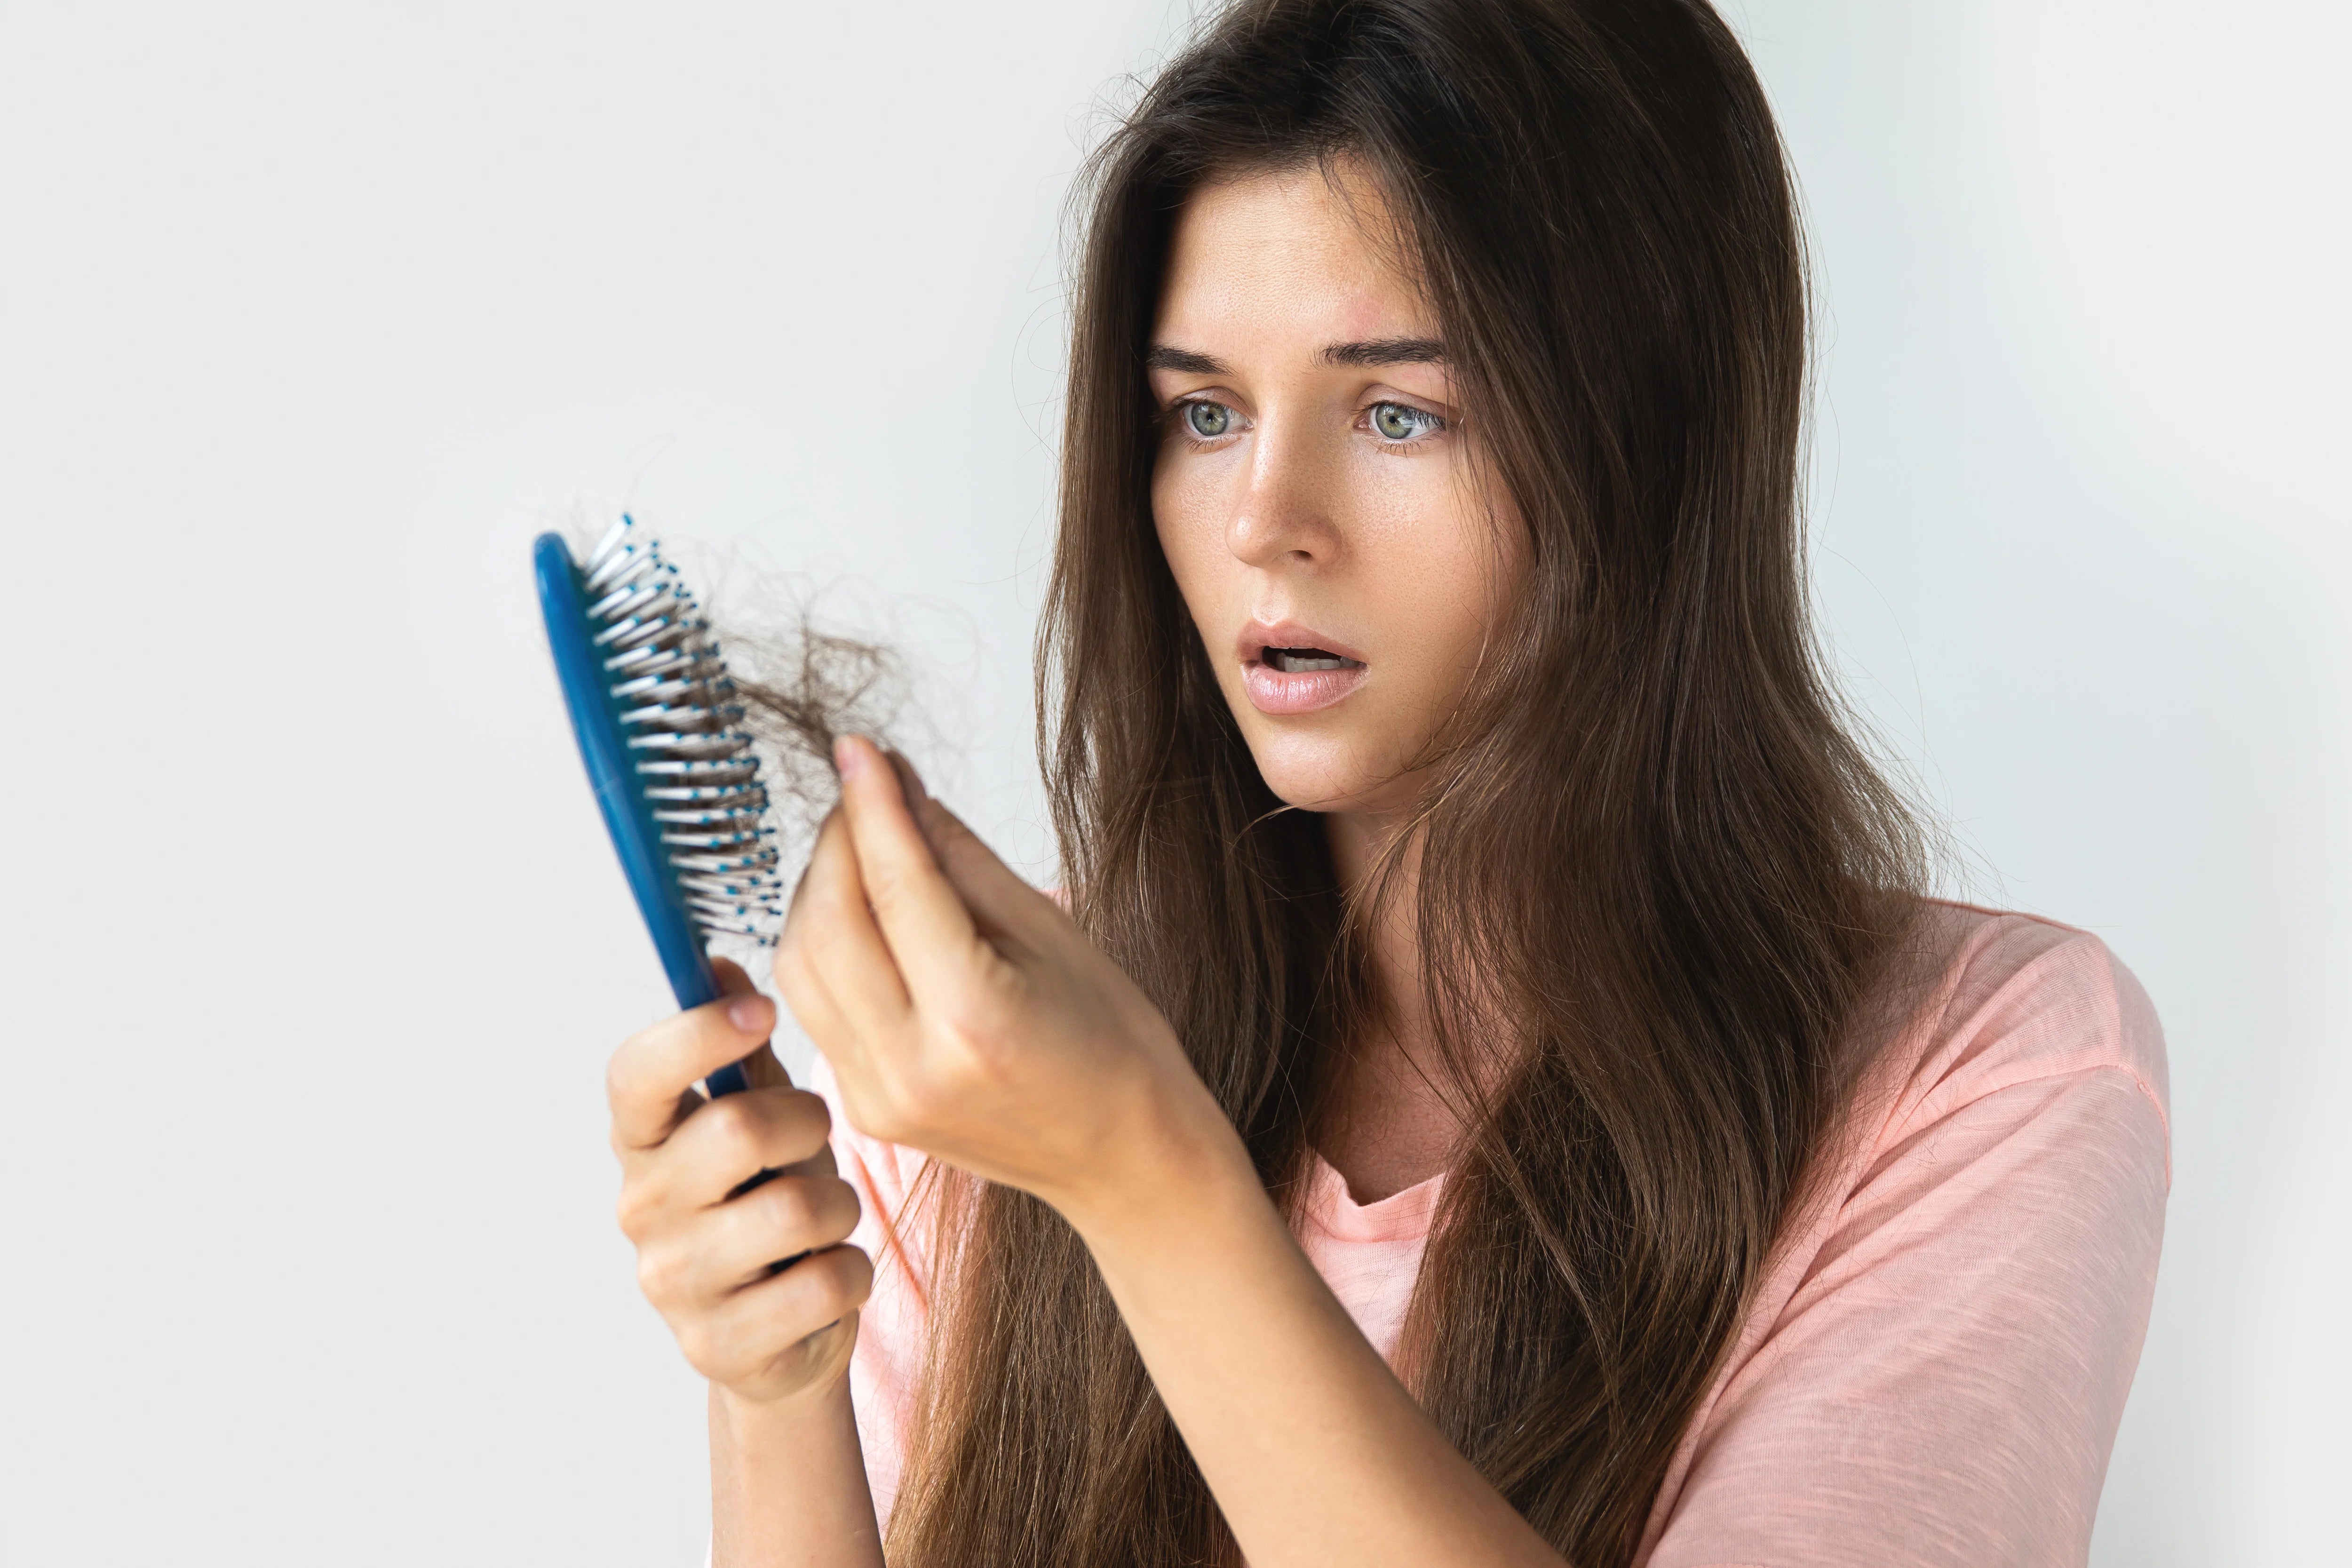 נשירת שיער בקרב נשים- גורמים, תסמינים ופתרונות